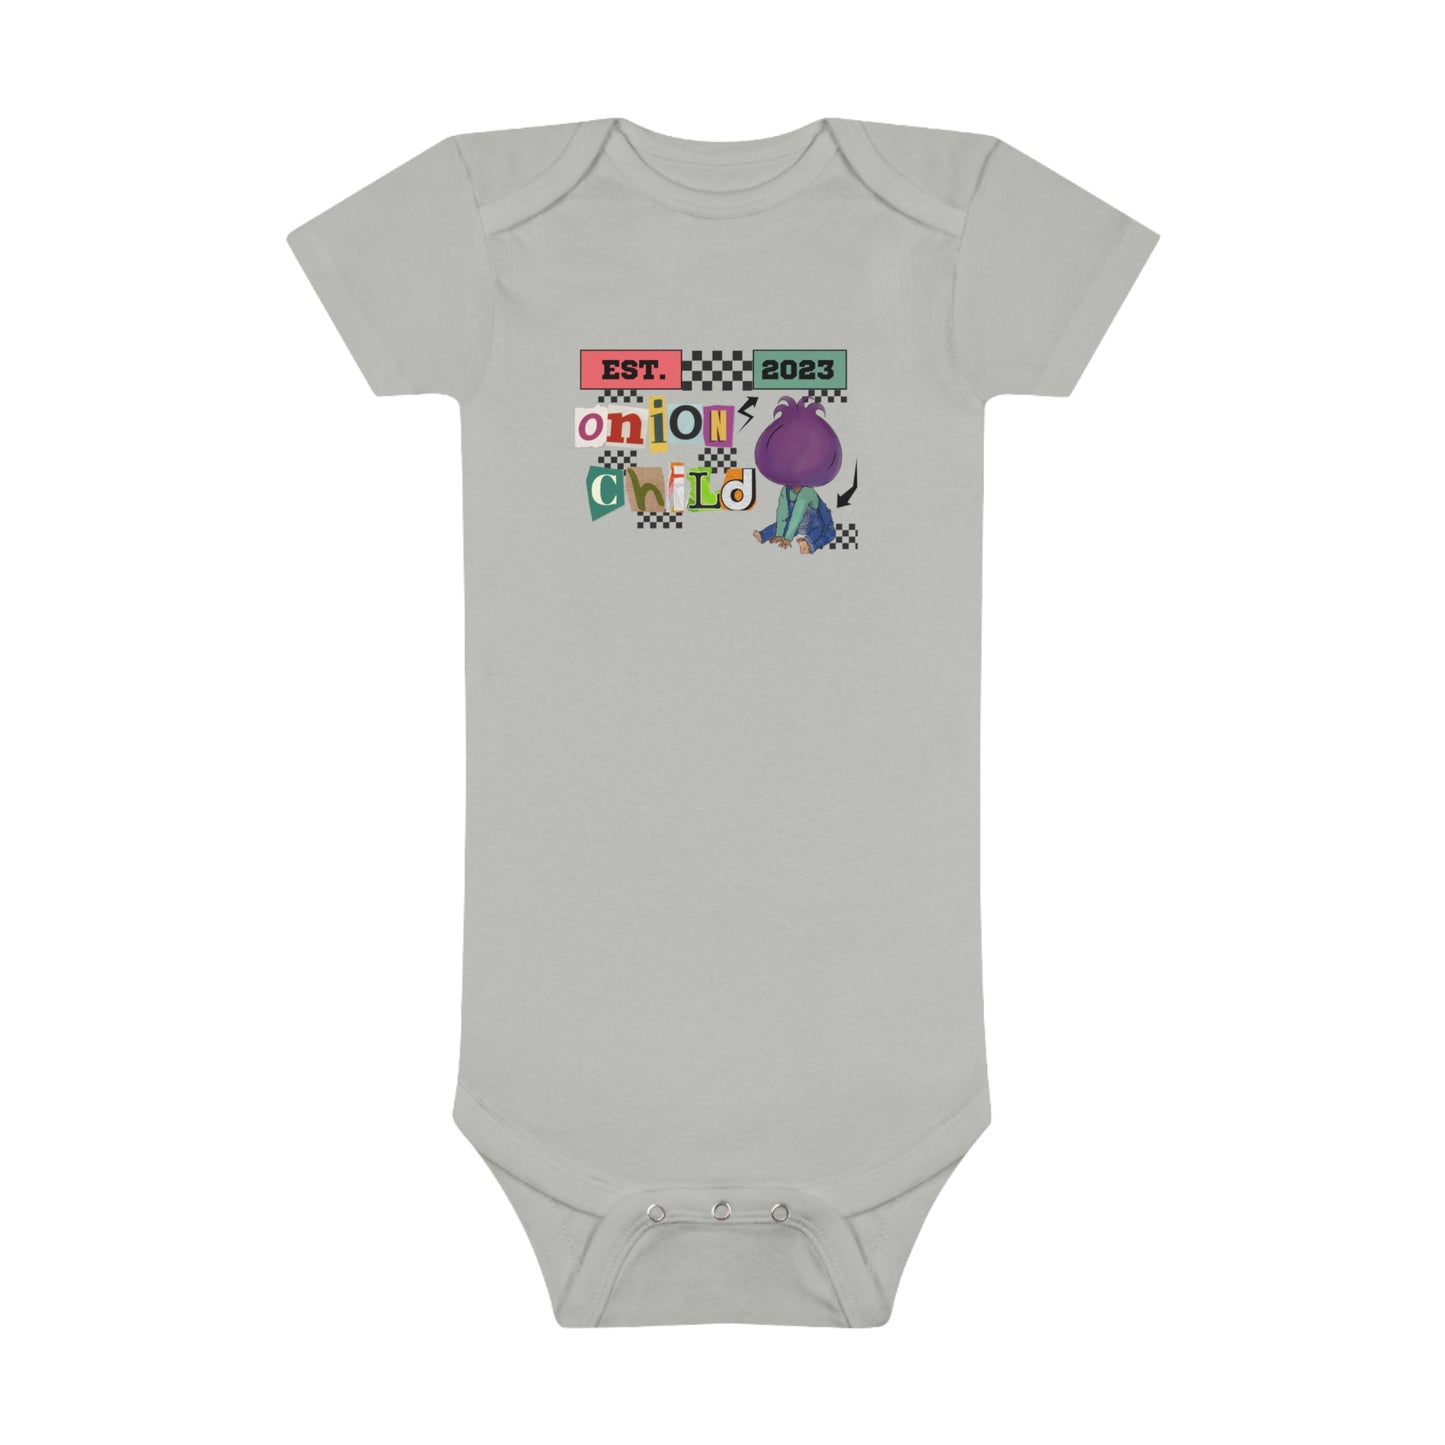 Onion Child Baby Short Sleeve Onesie®